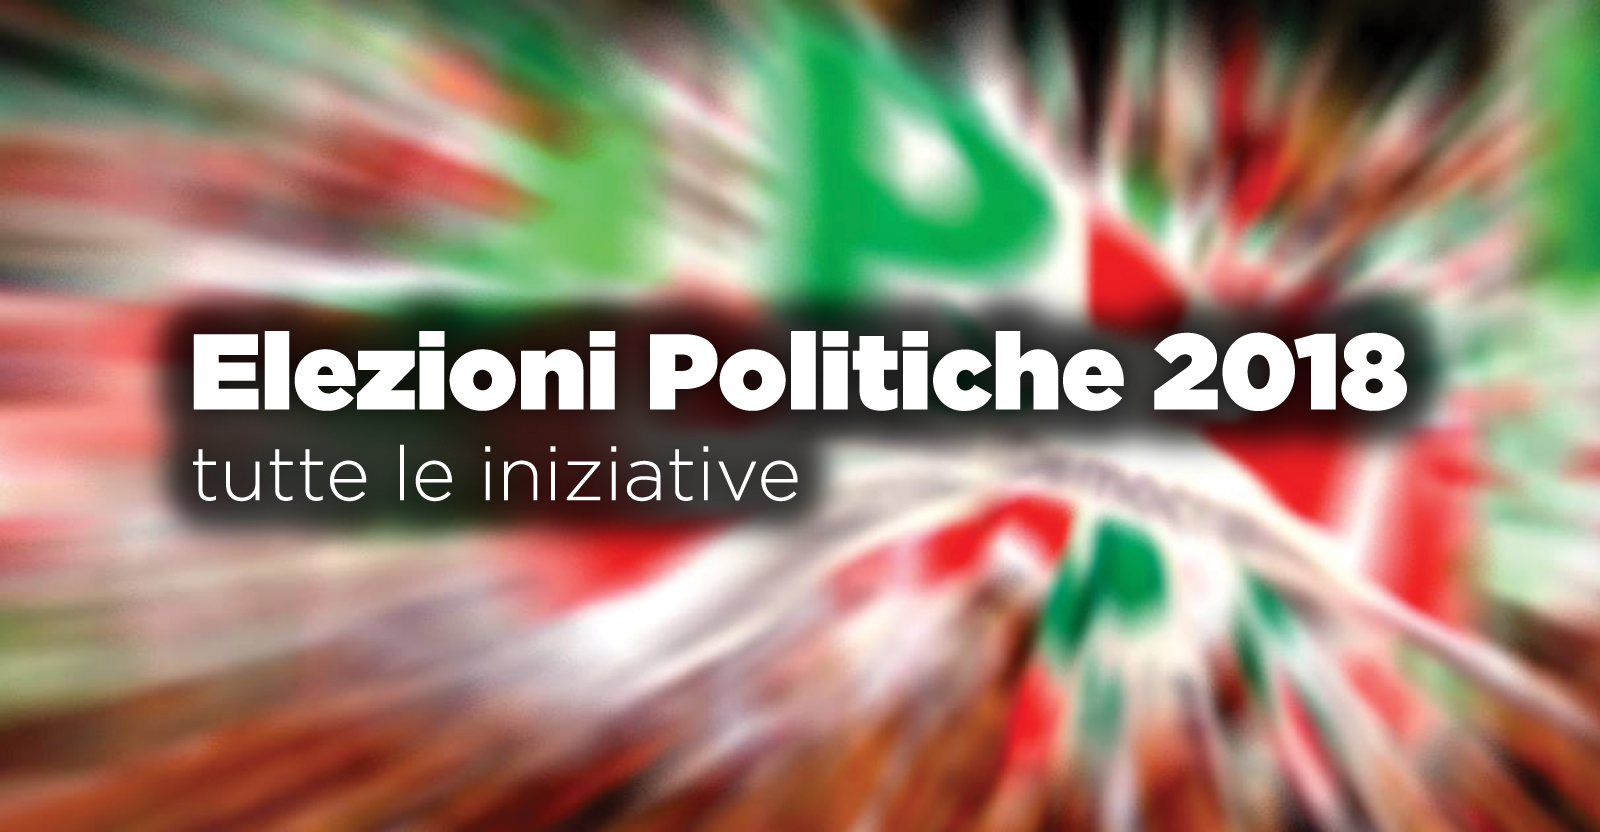 Featured image for “Elezioni politiche 2018”